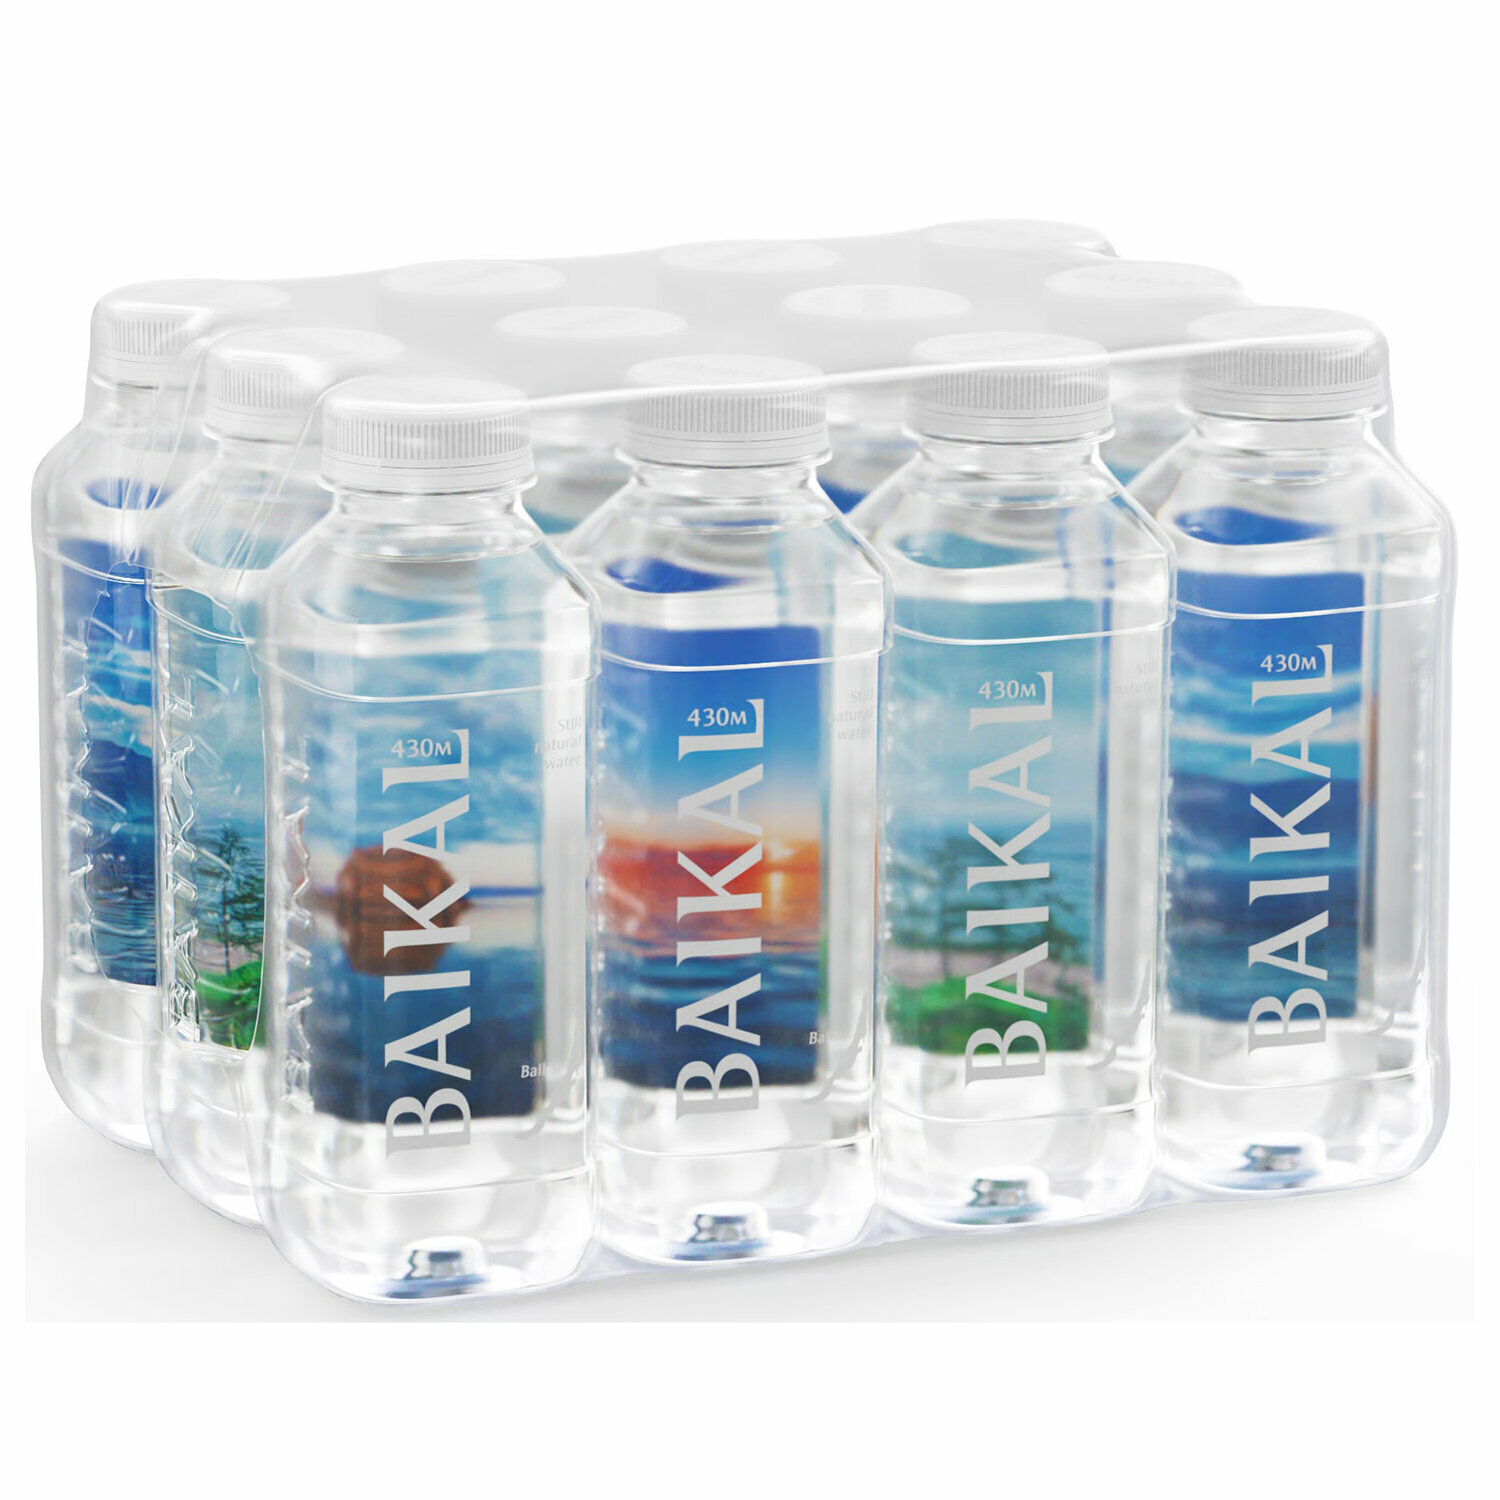 Вода негазированная питьевая BAIKAL 430 (Байкал 430) 0,45 л, пластиковая бутылка, 4670010850450 - фотография № 4